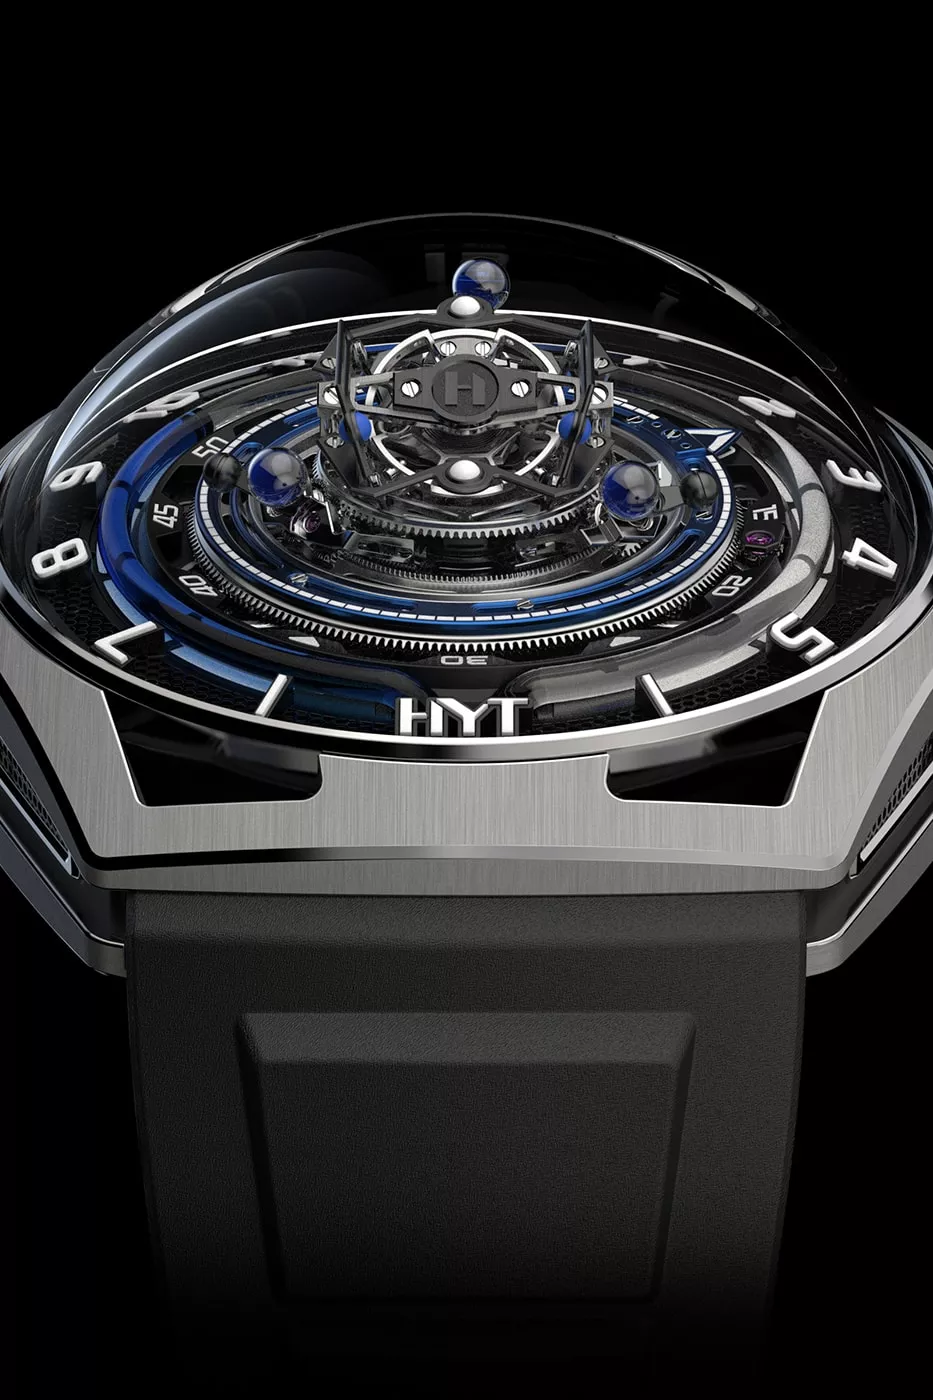 HYT представляет конический турбийон в синем титановом цвете